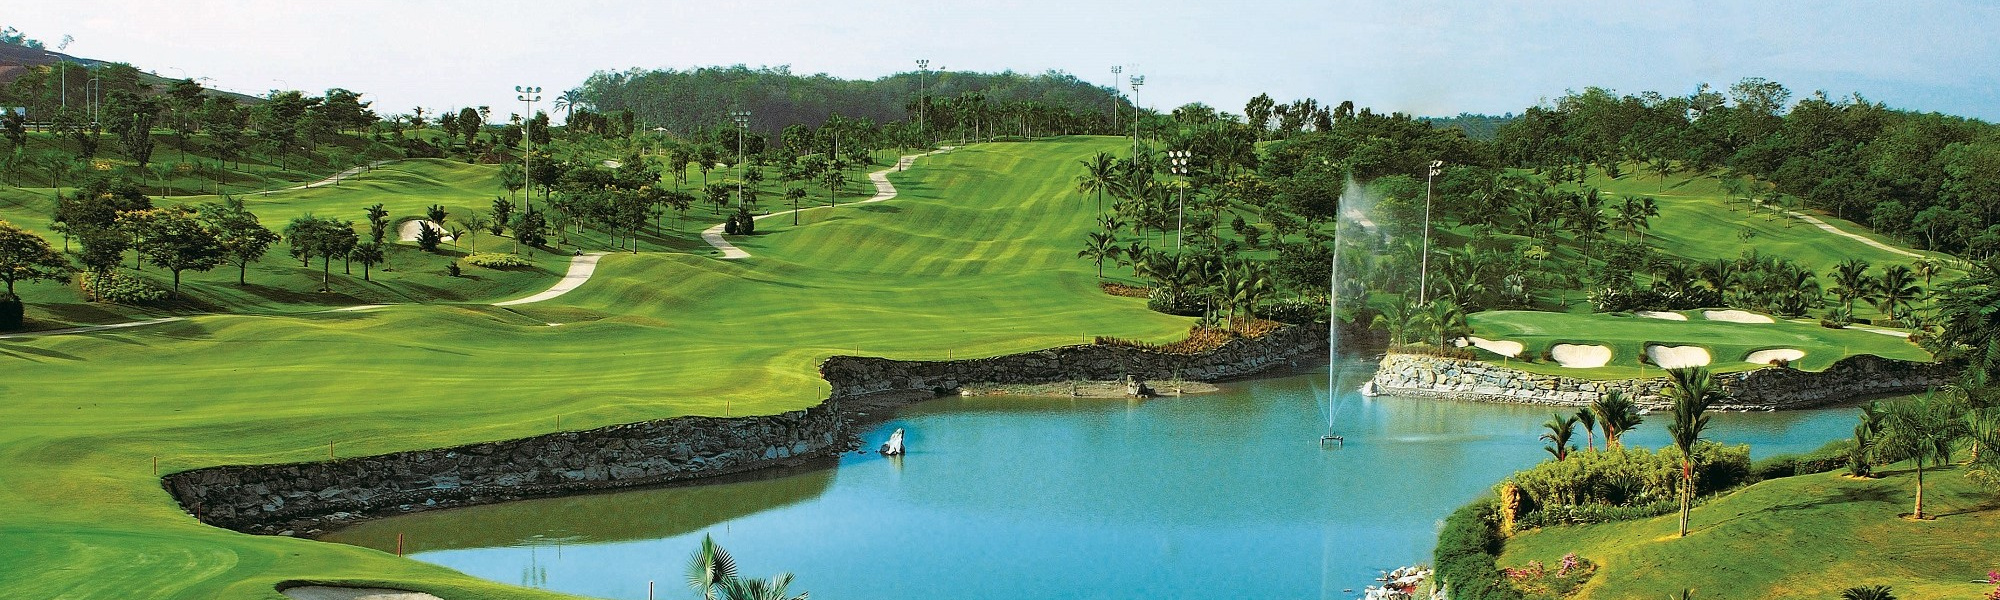 Palm Garden Golf Club View